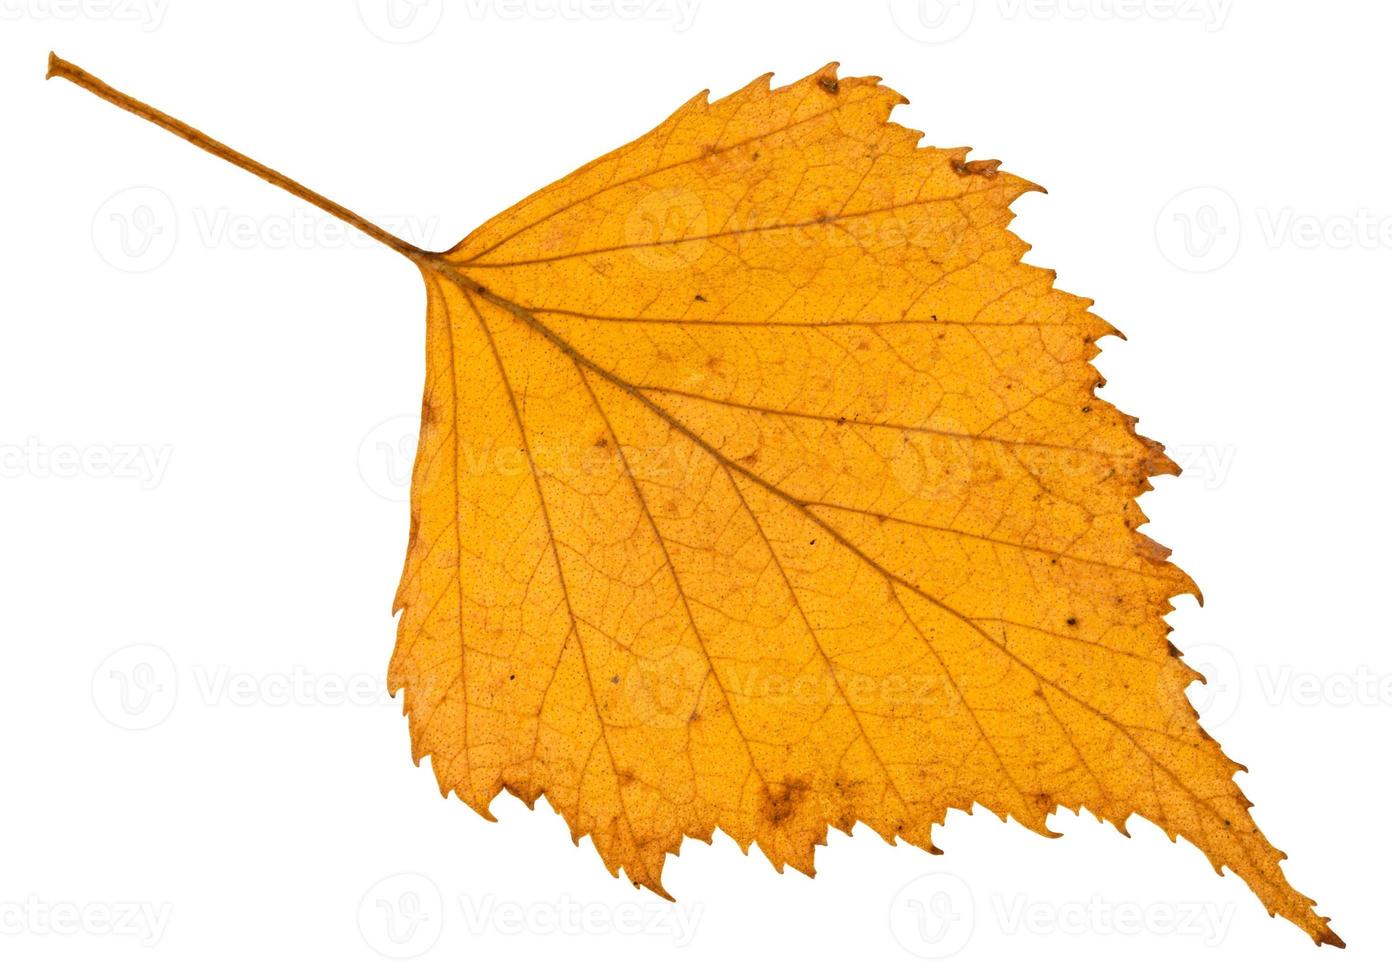 caduto autunno giallo foglia di betulla albero isolato foto